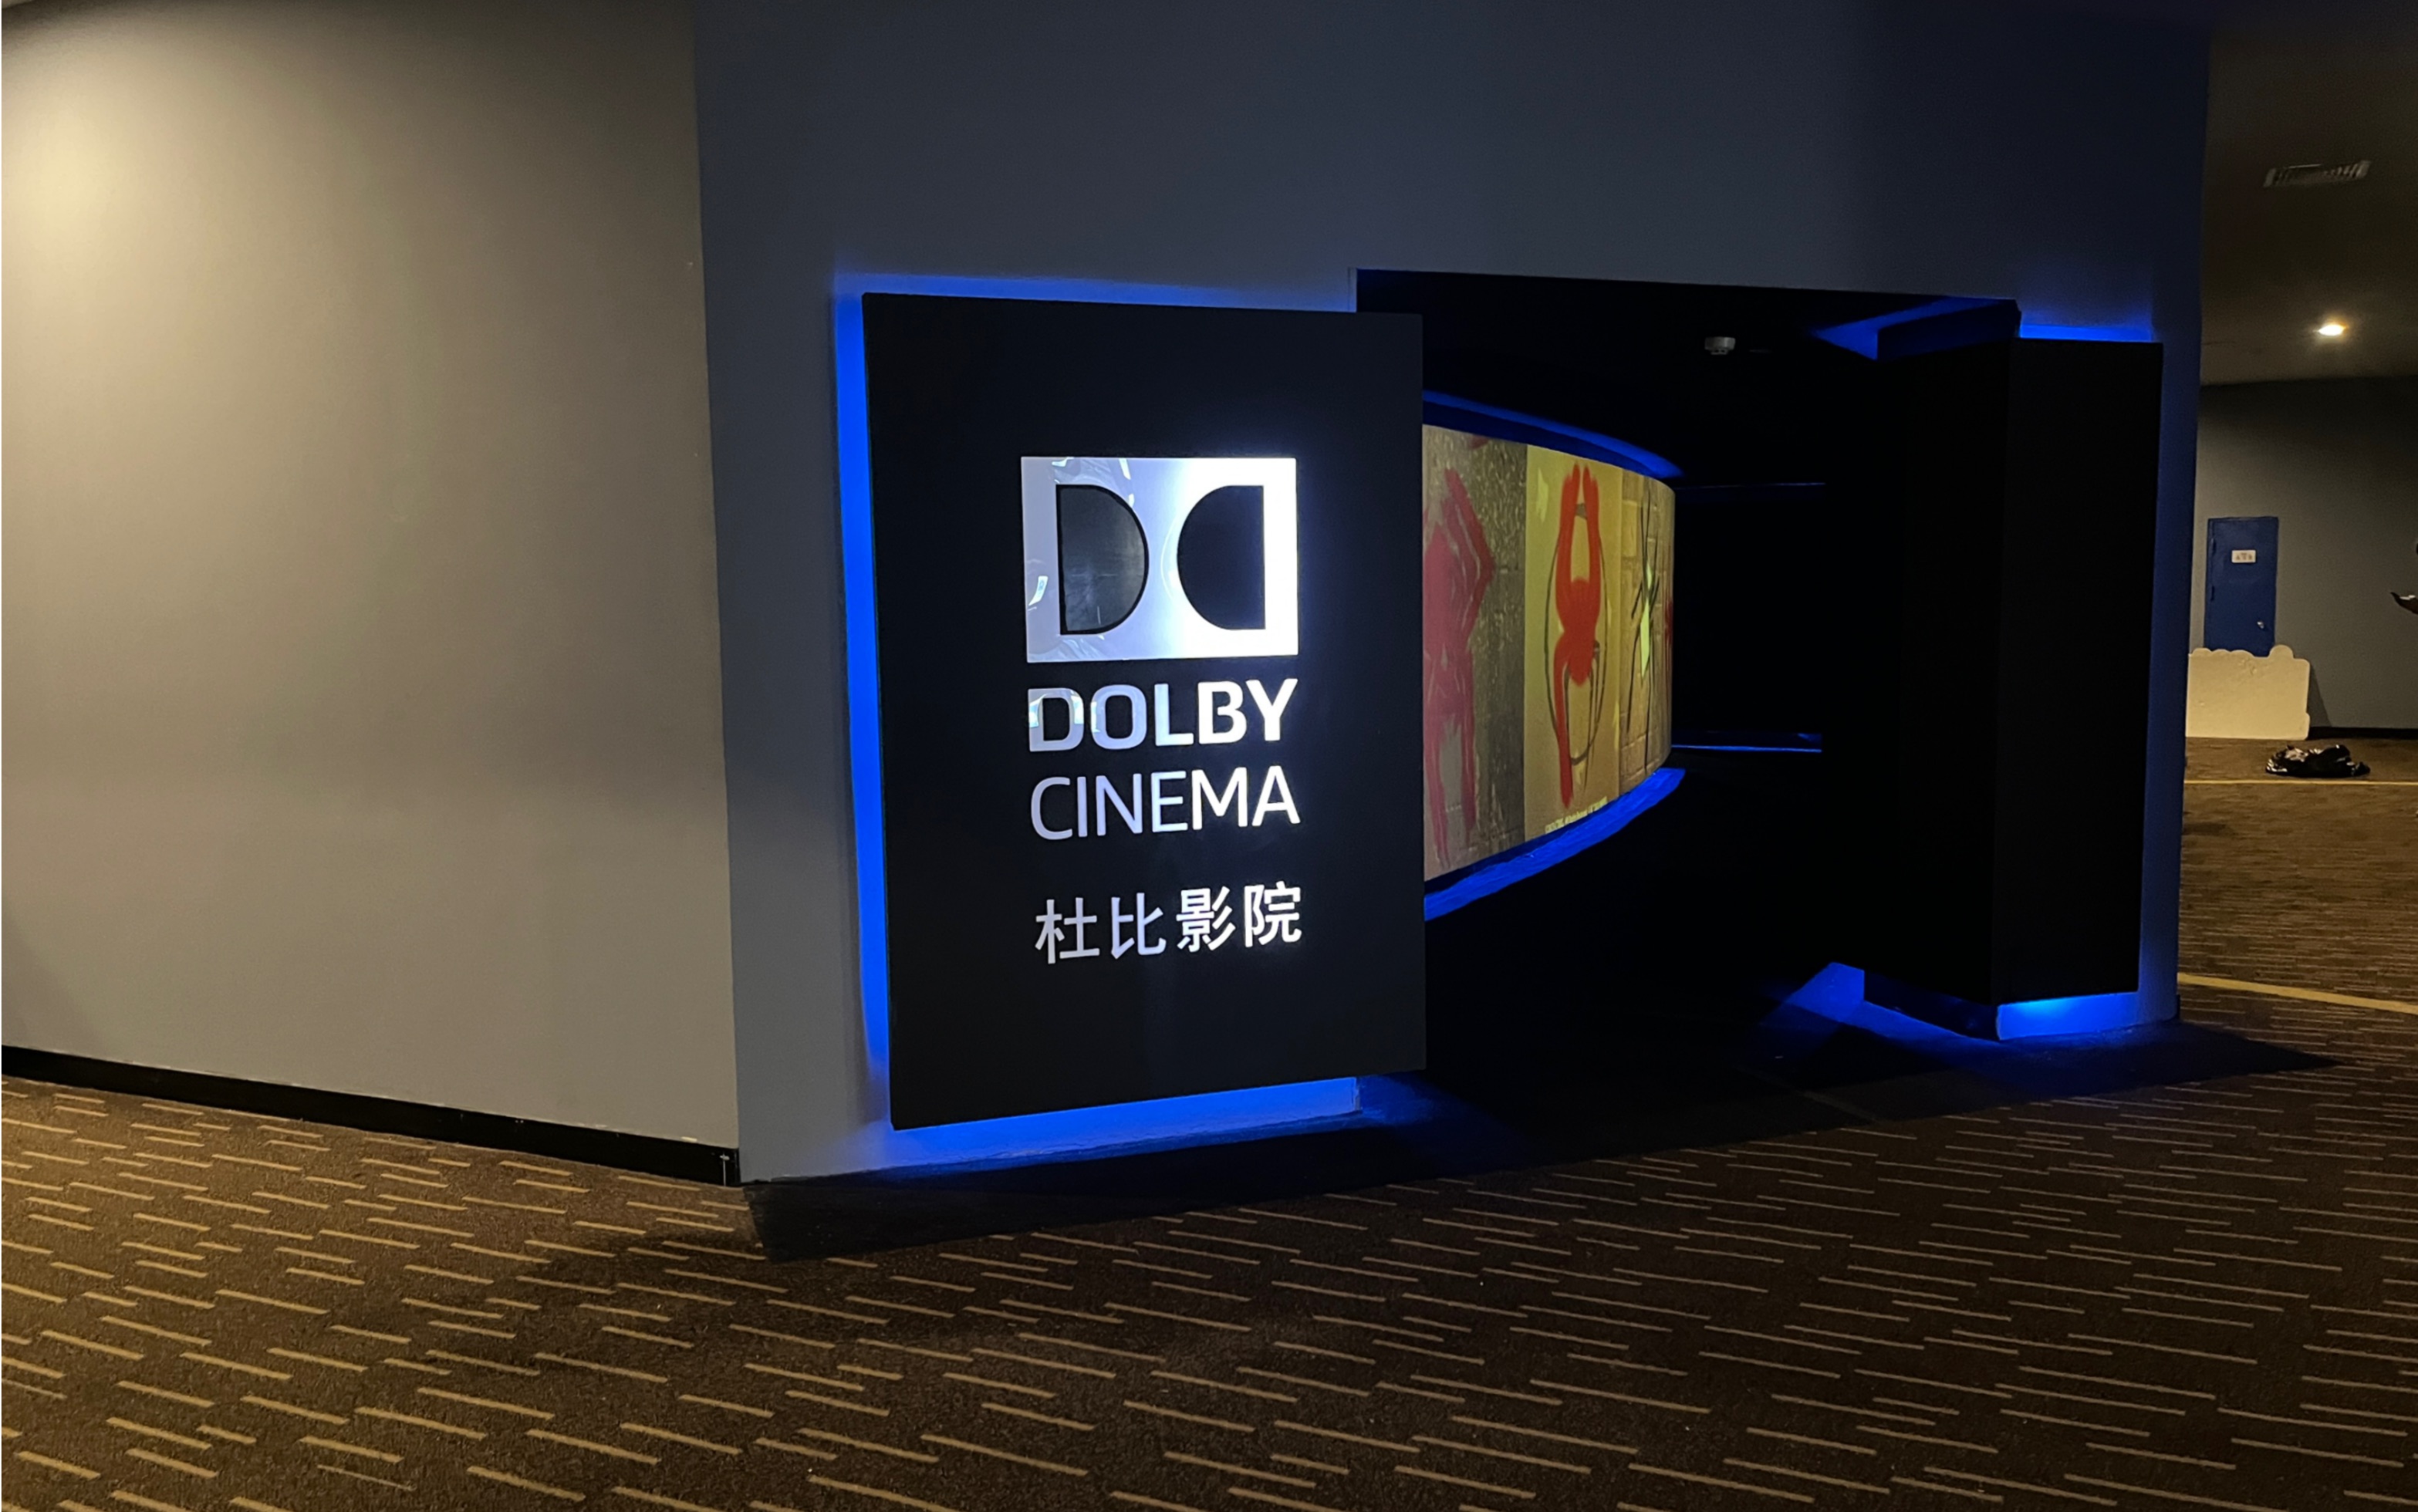 终于关了灯的杜比影院（dolby cinema）映前秀